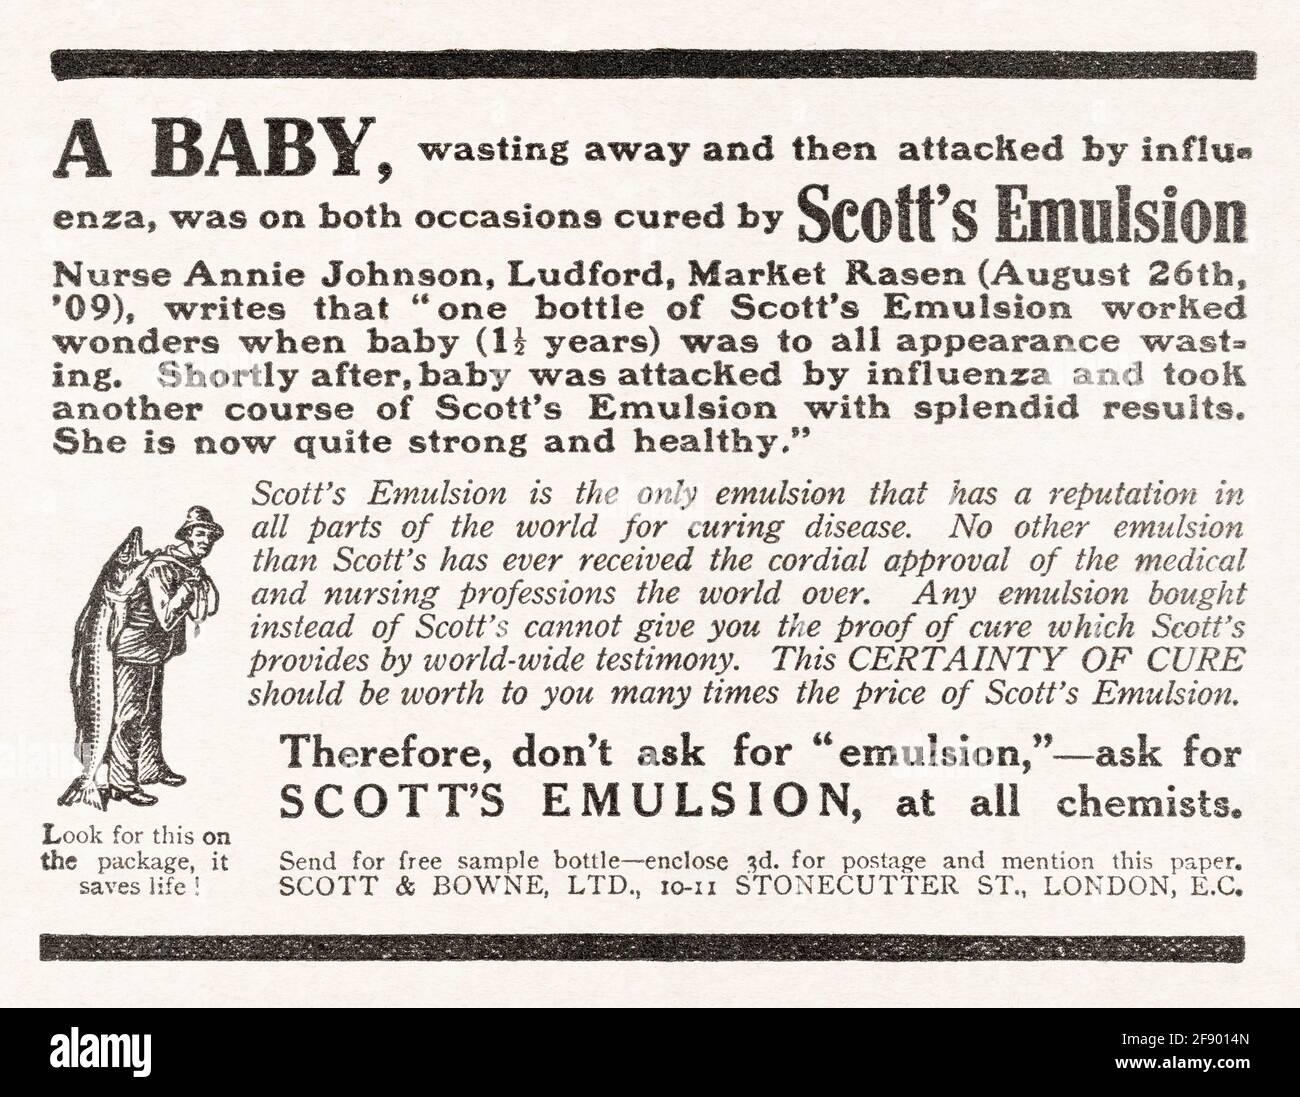 Alte, alte, edwardianische Zeitschriftenzeitung für Scott's Emulation Influenza-Medizin-Werbung von 1912 - vor Werbestandards. Stockfoto